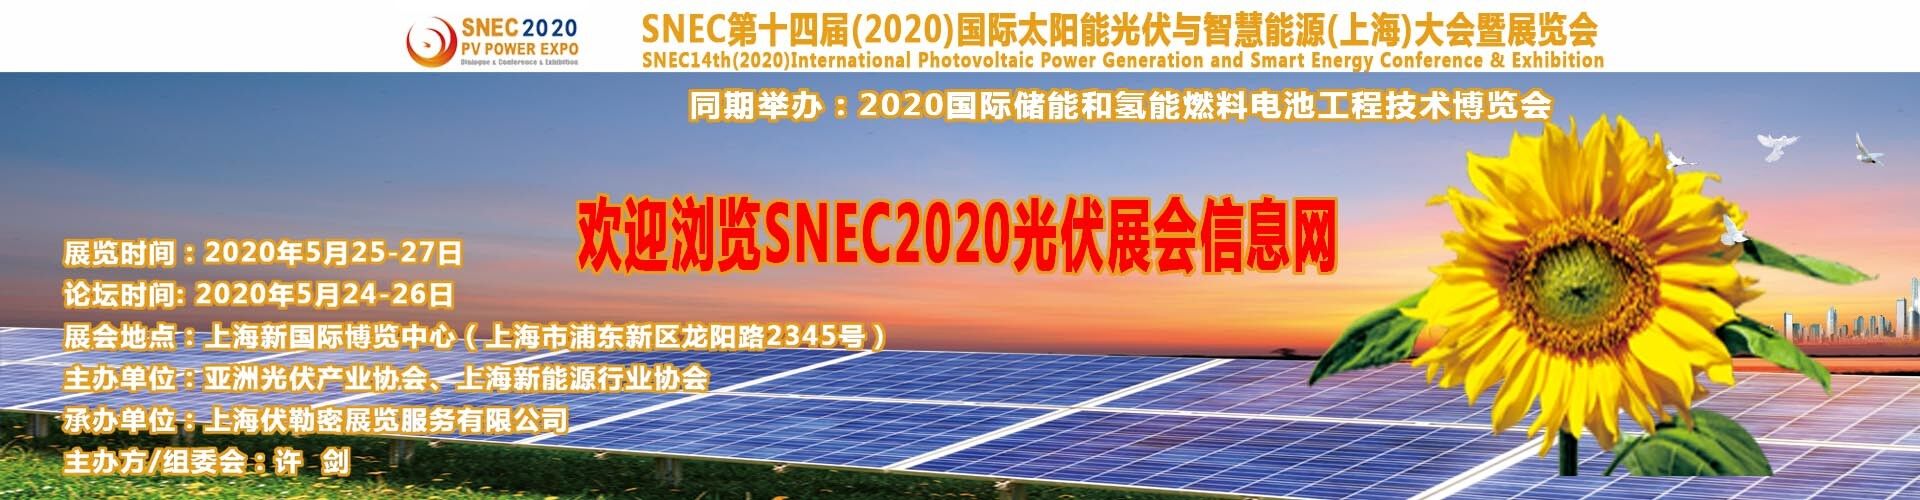 2018SNEC上海太陽能展會同期研討會